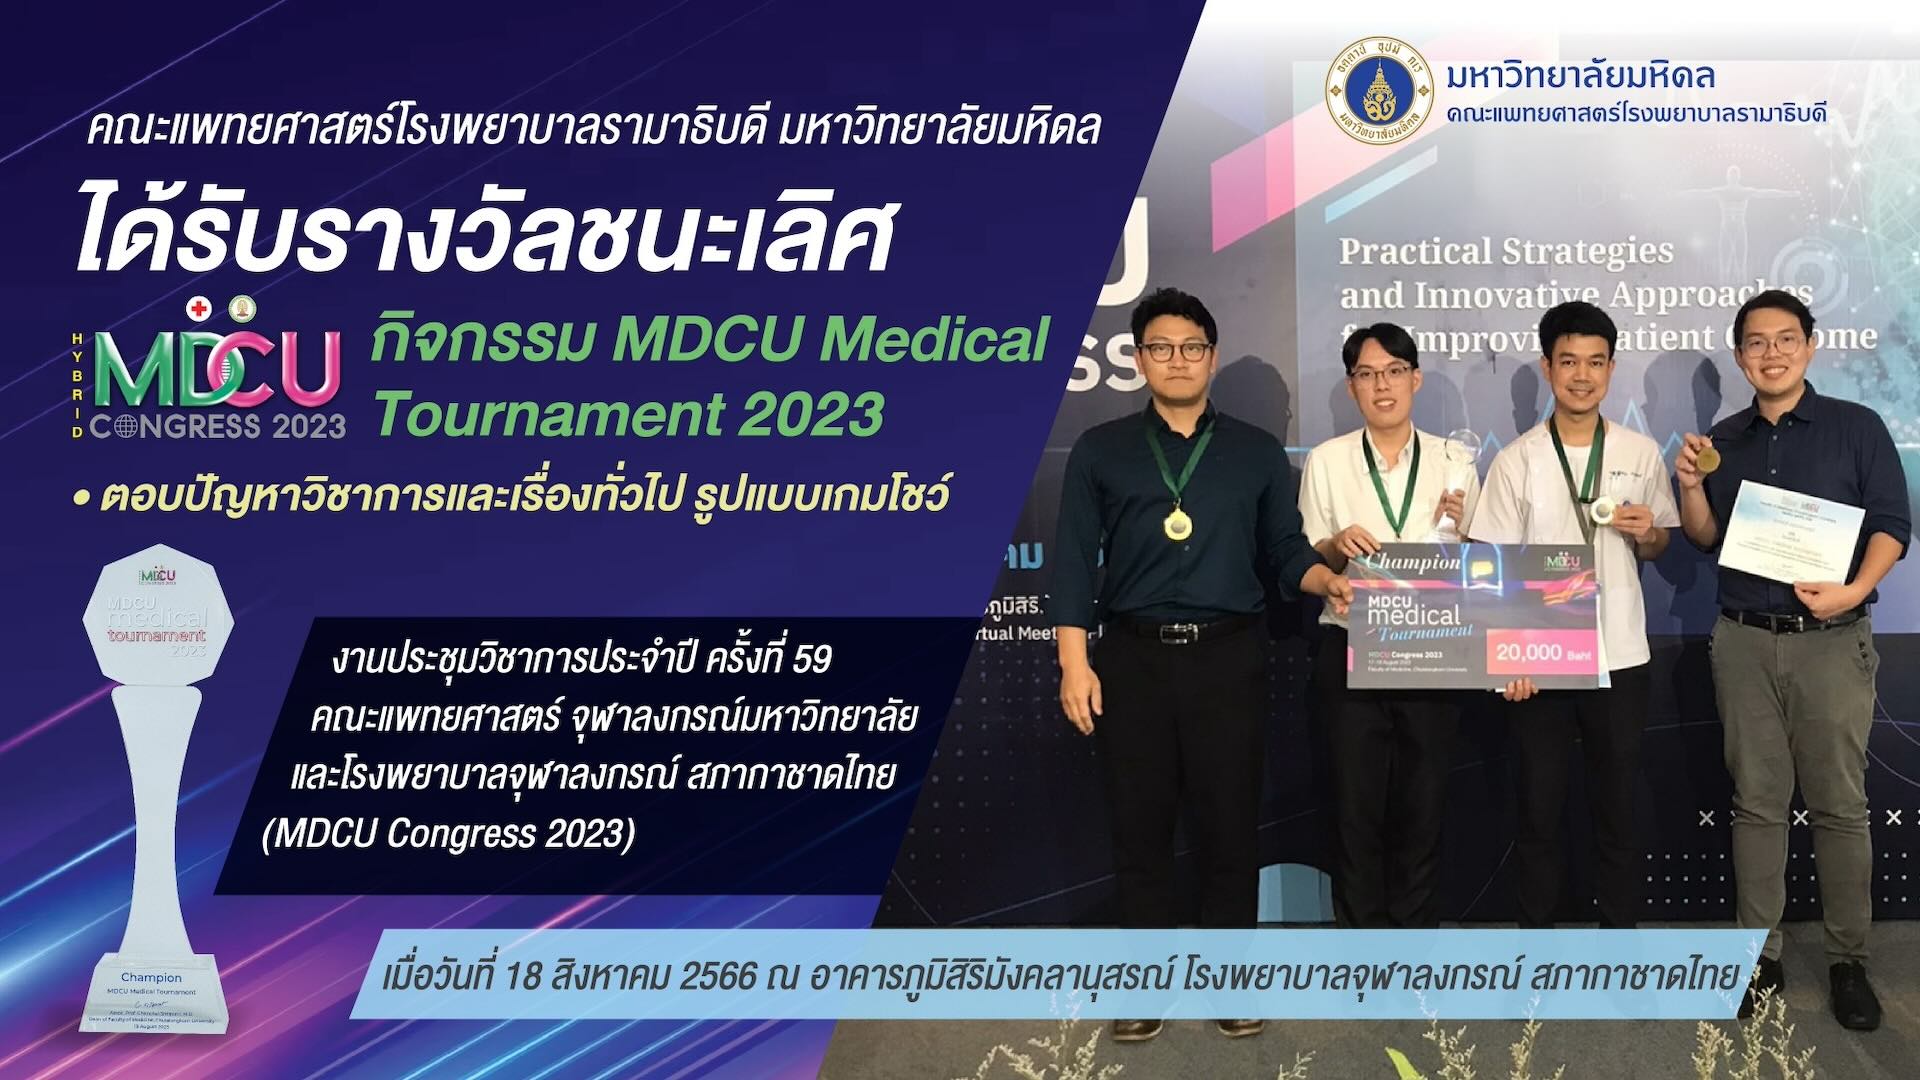 คณะแพทยศาสตร์โรงพยาบาลรามาธิบดี มหาวิทยาลัยมหิดล ได้รับรางวัลชนะเลิศ กิจกรรม MDCU Medical Tournament 2023